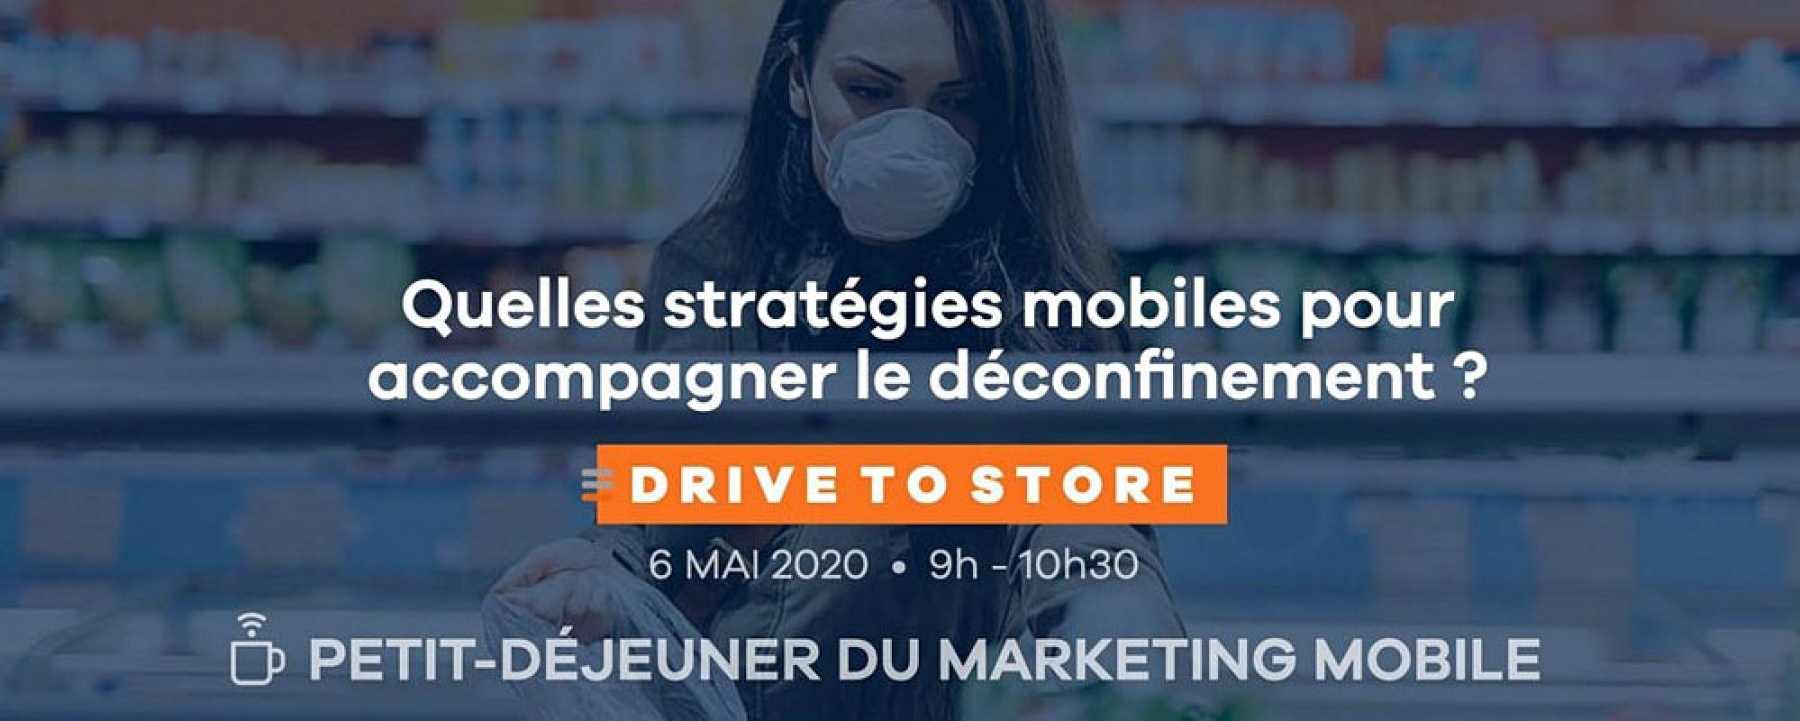 Webinar Drive-to-store : quelles stratégies mobiles pour accompagner le déconfinement ?, le 6 mai 2020, organisé par MMA 